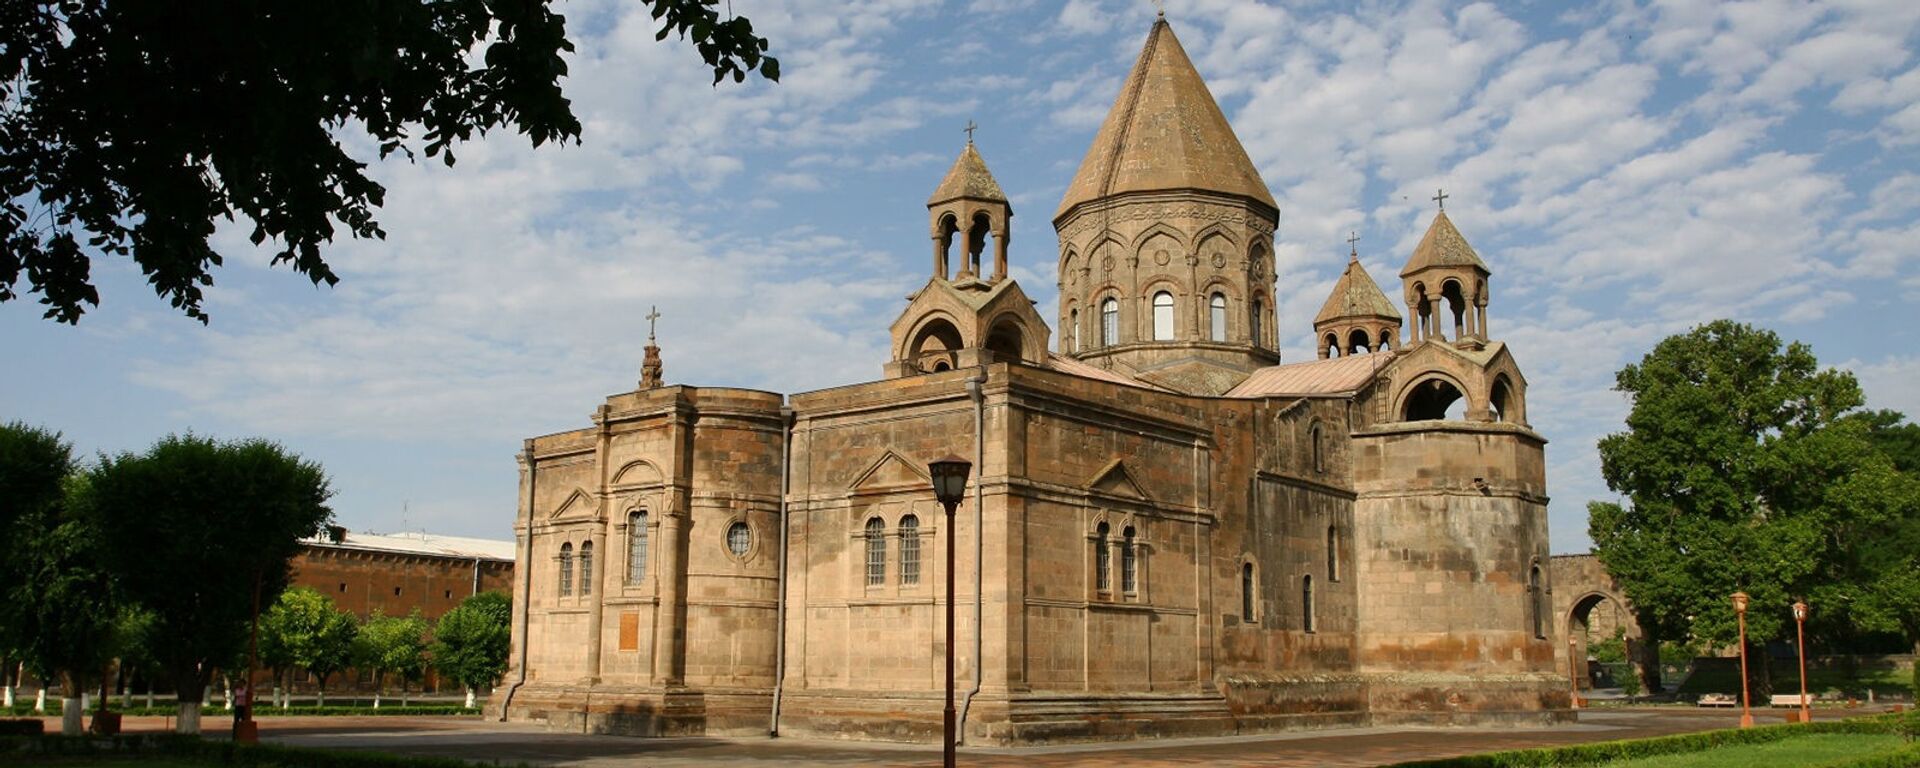 Эчмиадзинский монастырь - Sputnik Արմենիա, 1920, 02.06.2021